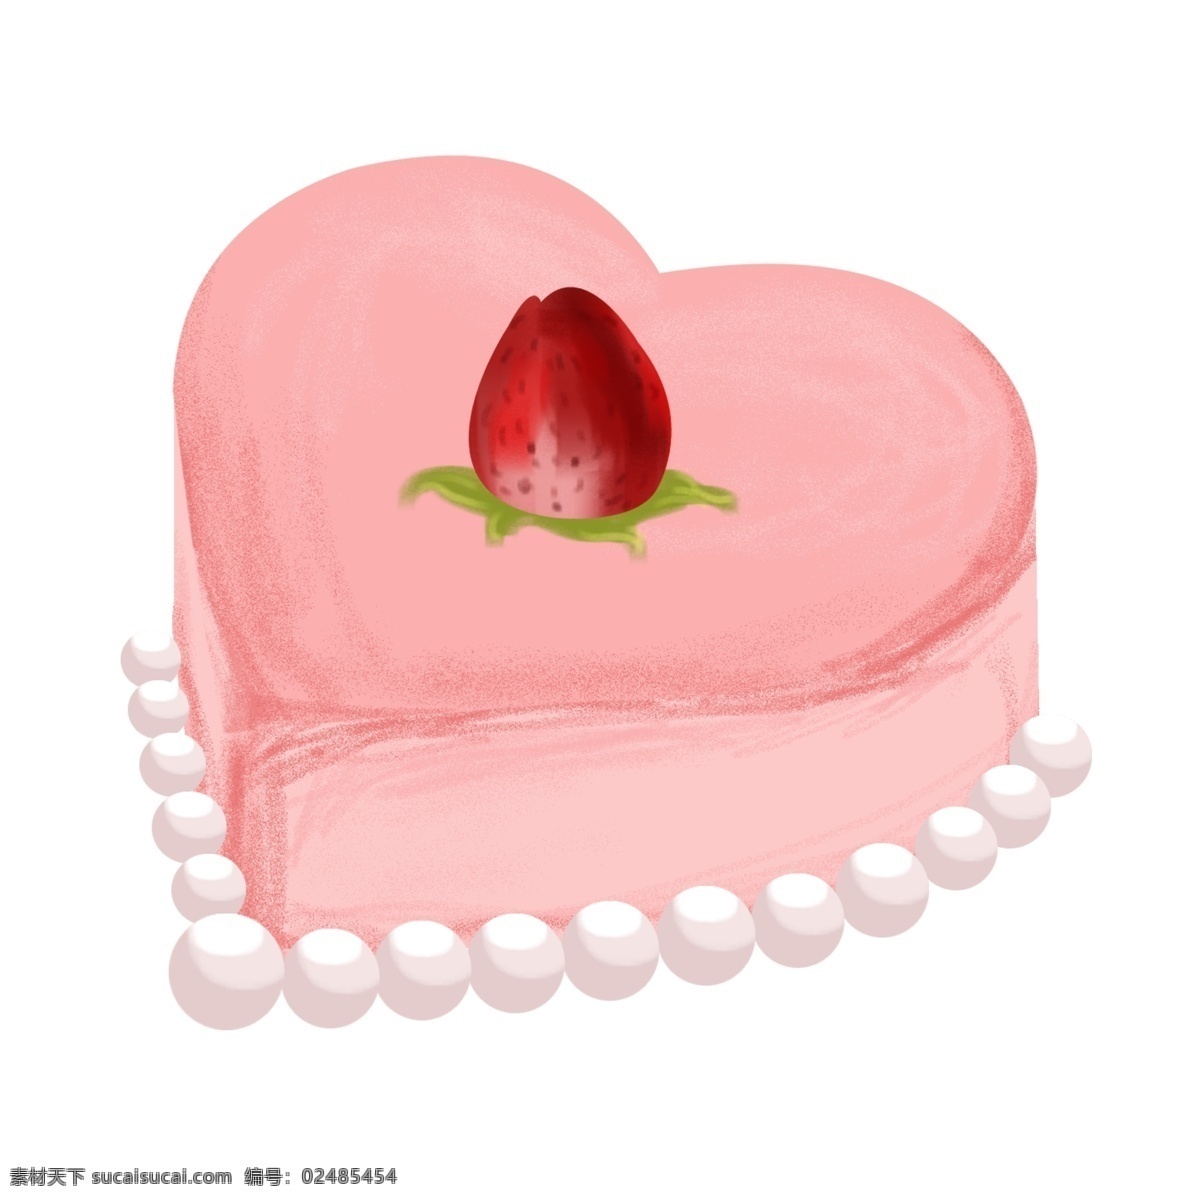 手绘 心形 蛋糕 插画 手绘蛋糕 蛋糕插画 心形蛋糕 草莓 爱情蛋糕 粉色蛋糕 爱情甜品 手绘甜点